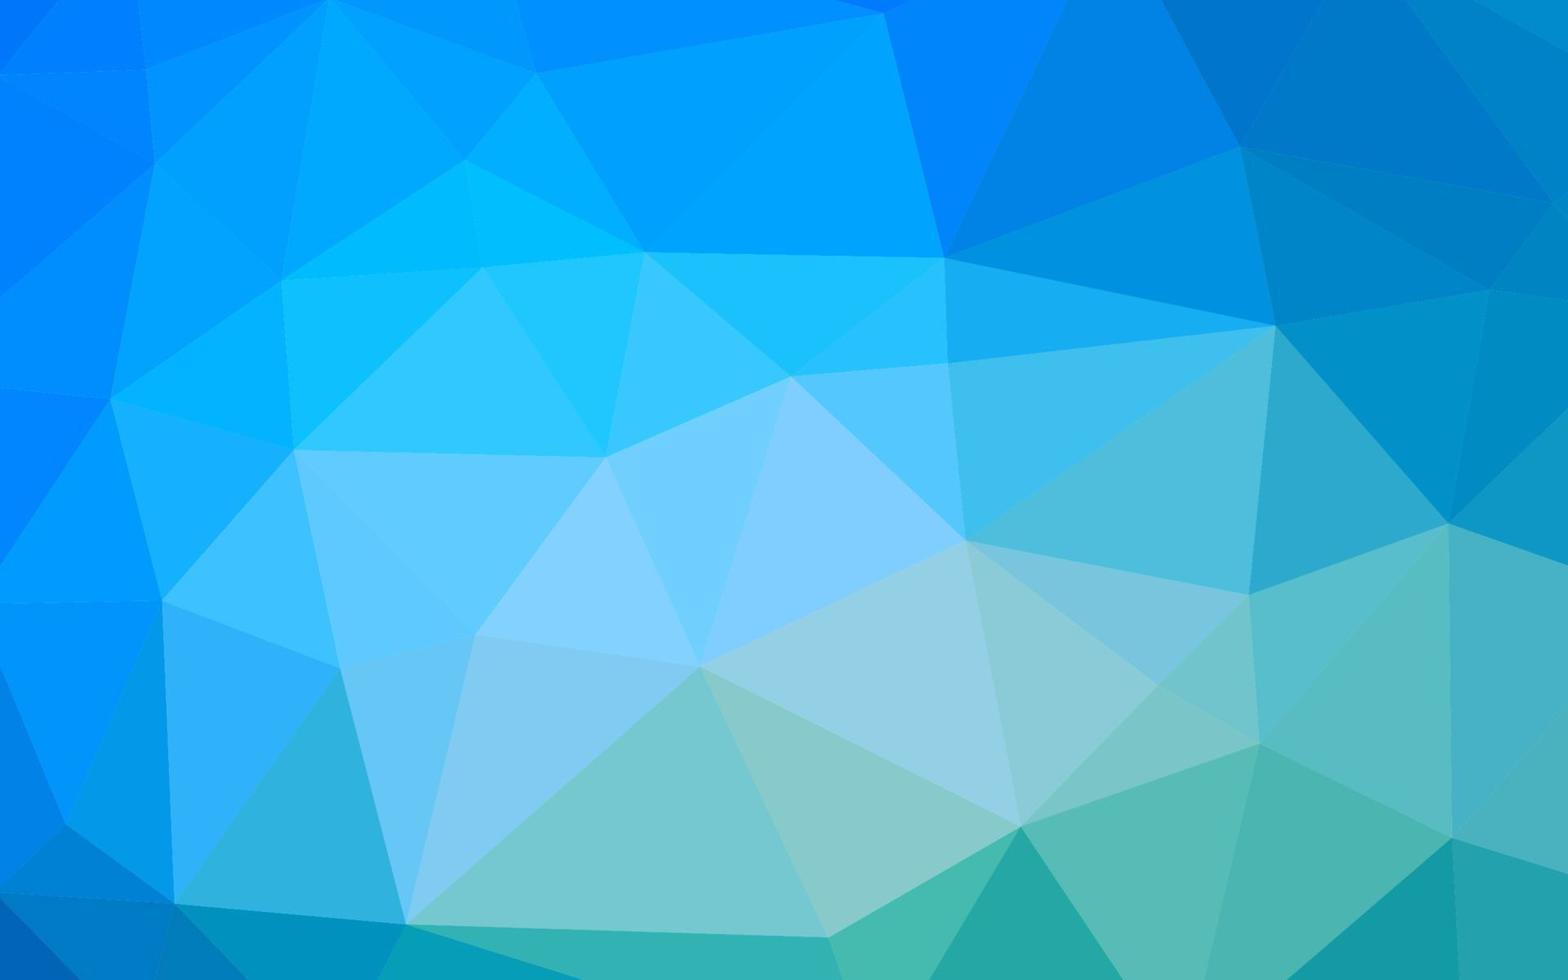 Light BLUE vector shining hexagonal template.